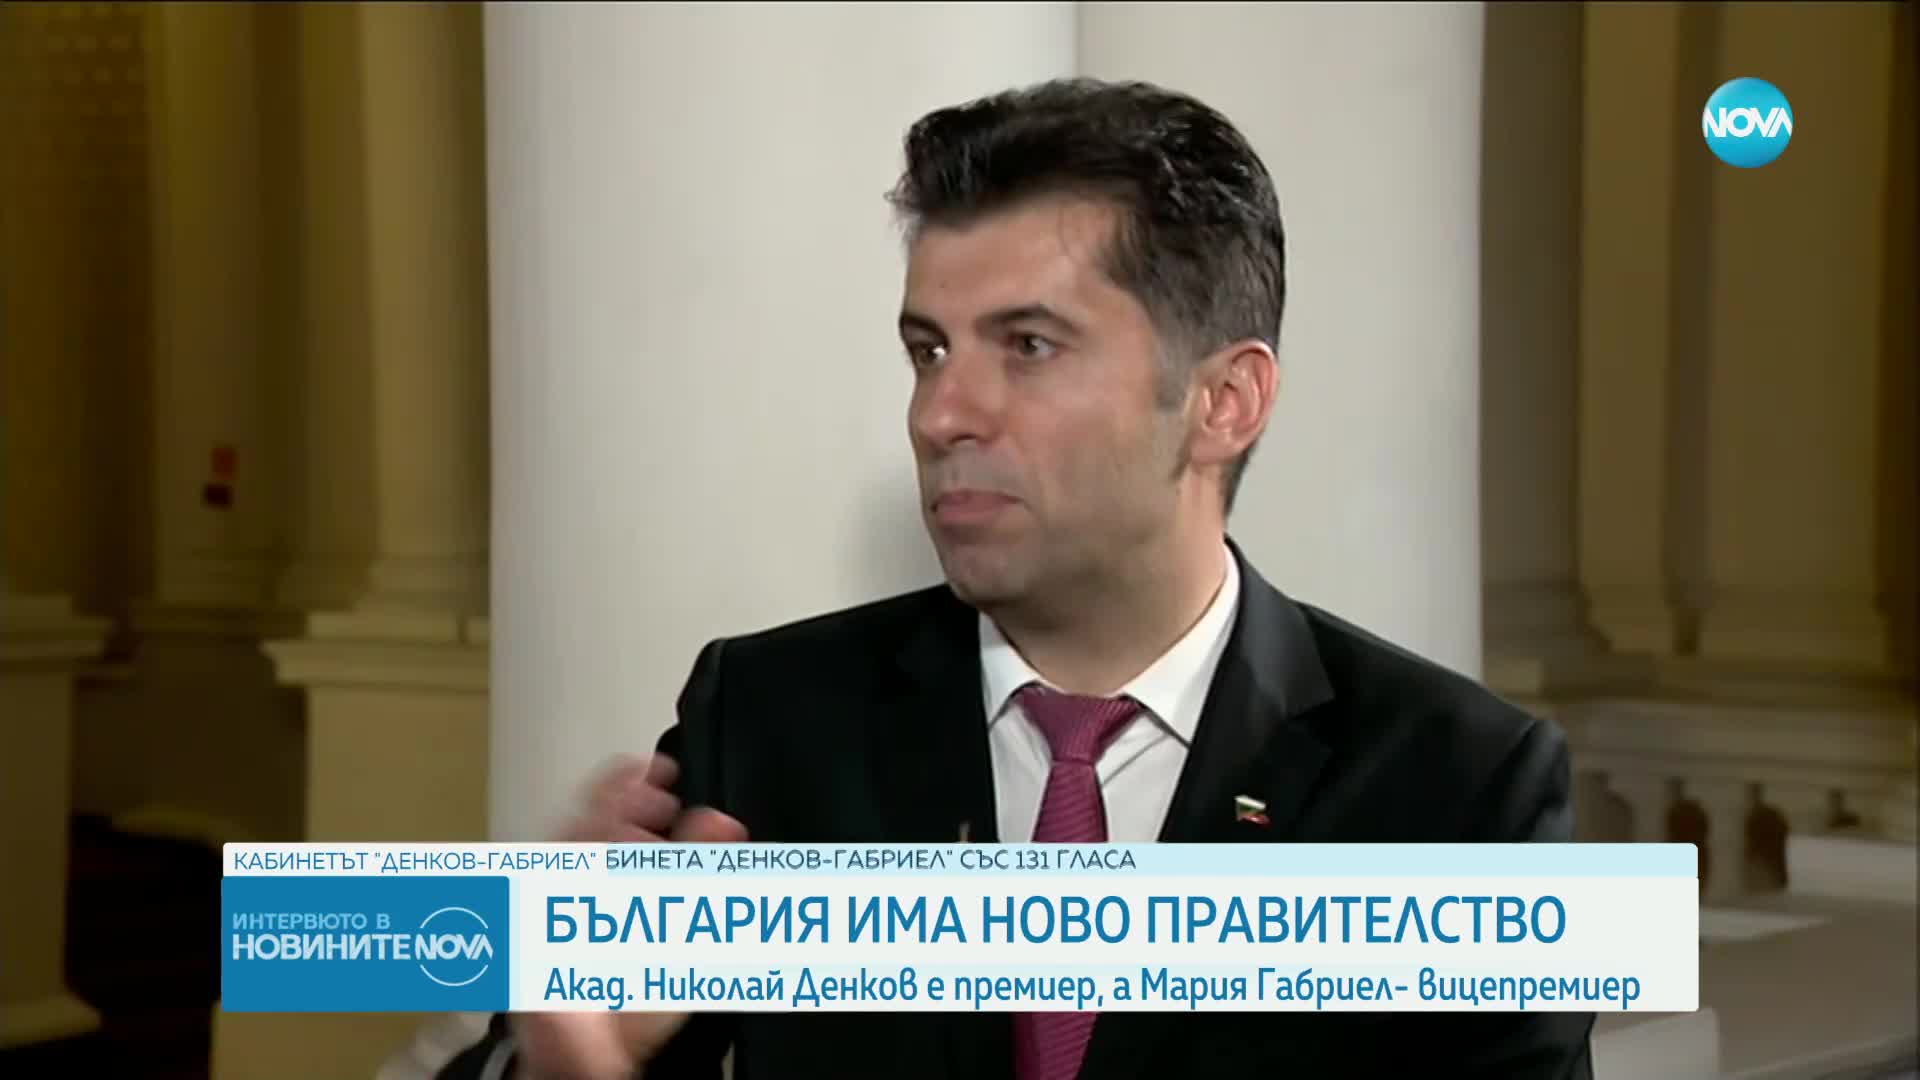 Кирил Петков: Ако кабинетът оцелее 18 месеца, може да има пълен мандат